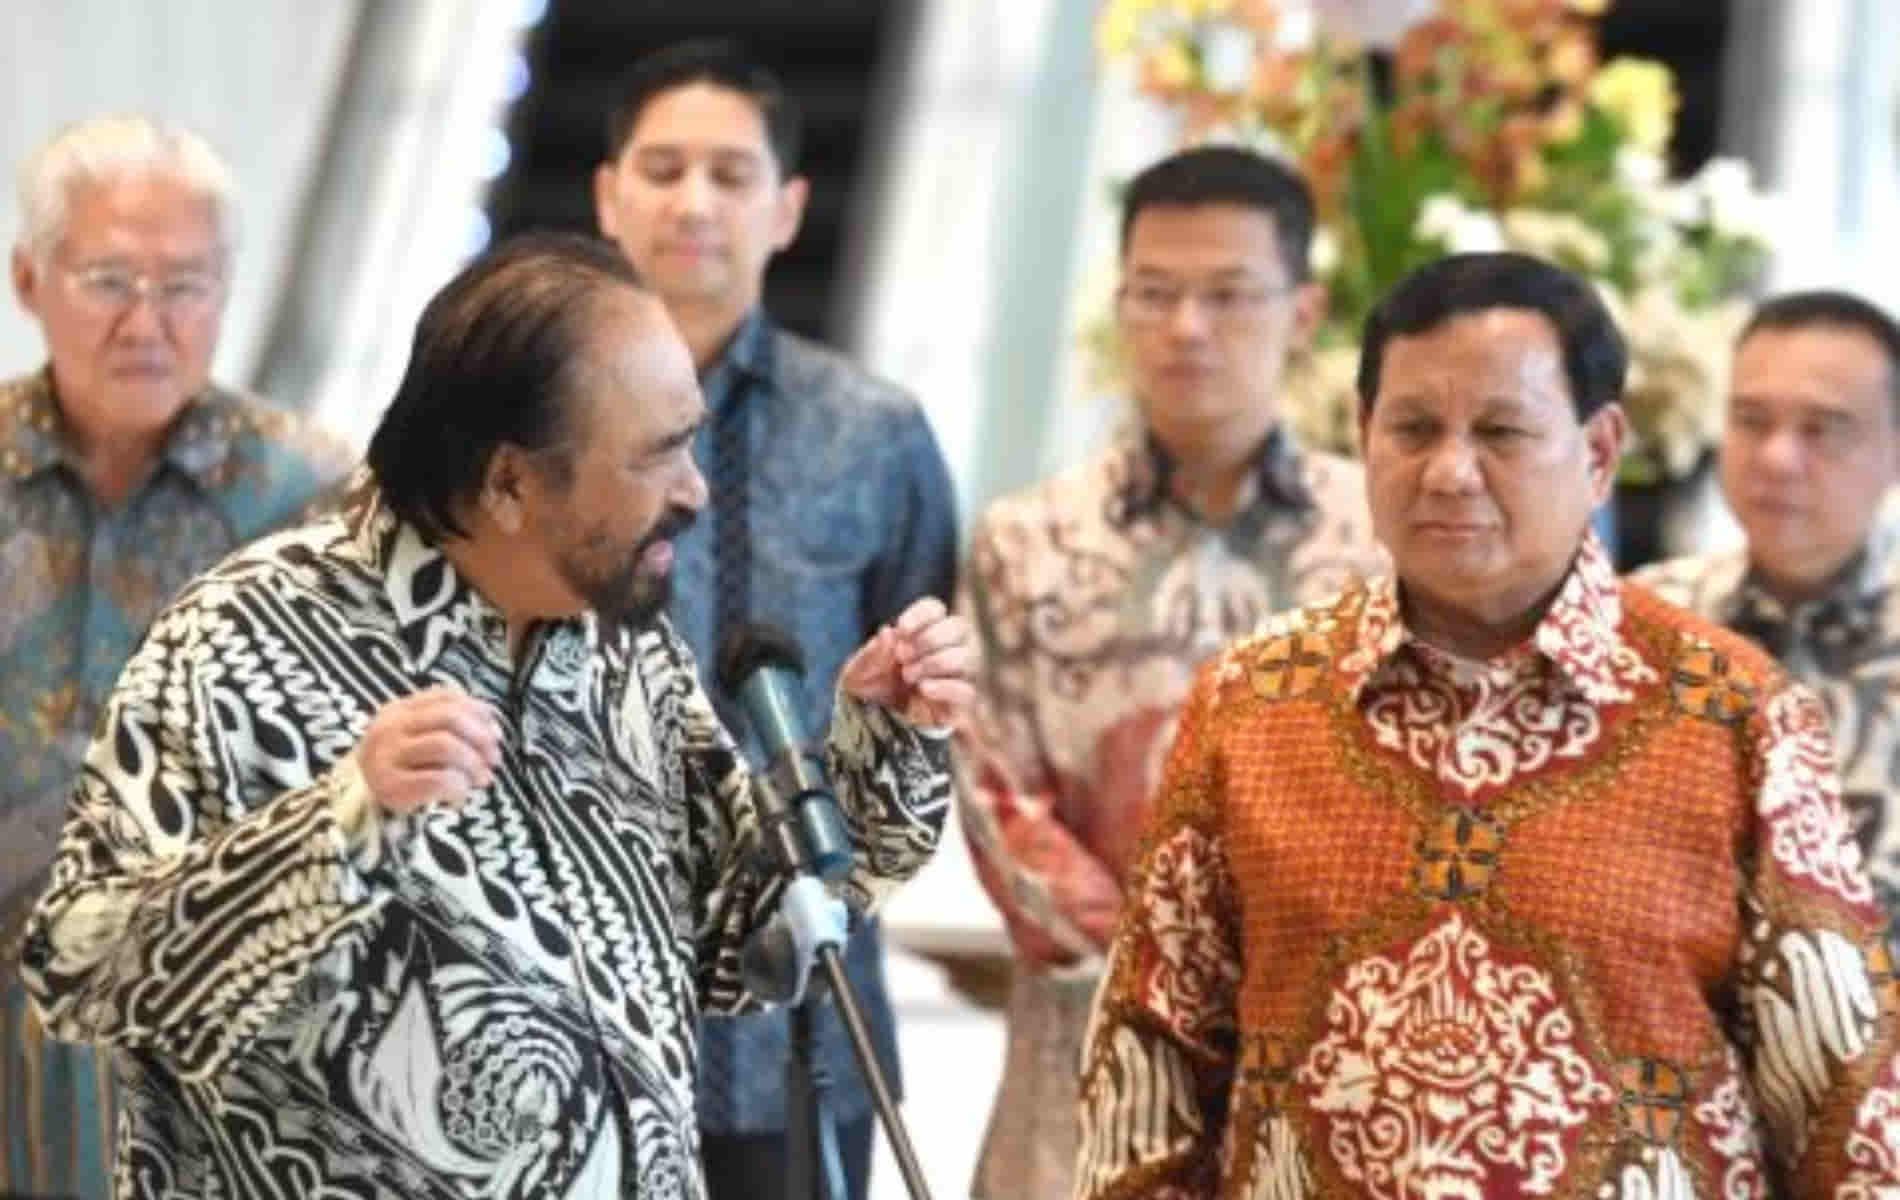 Pertemuan Prabowo dan Surya Paloh Isyarat Koalisi Baru & Perubahan Pasca-Pilpres.